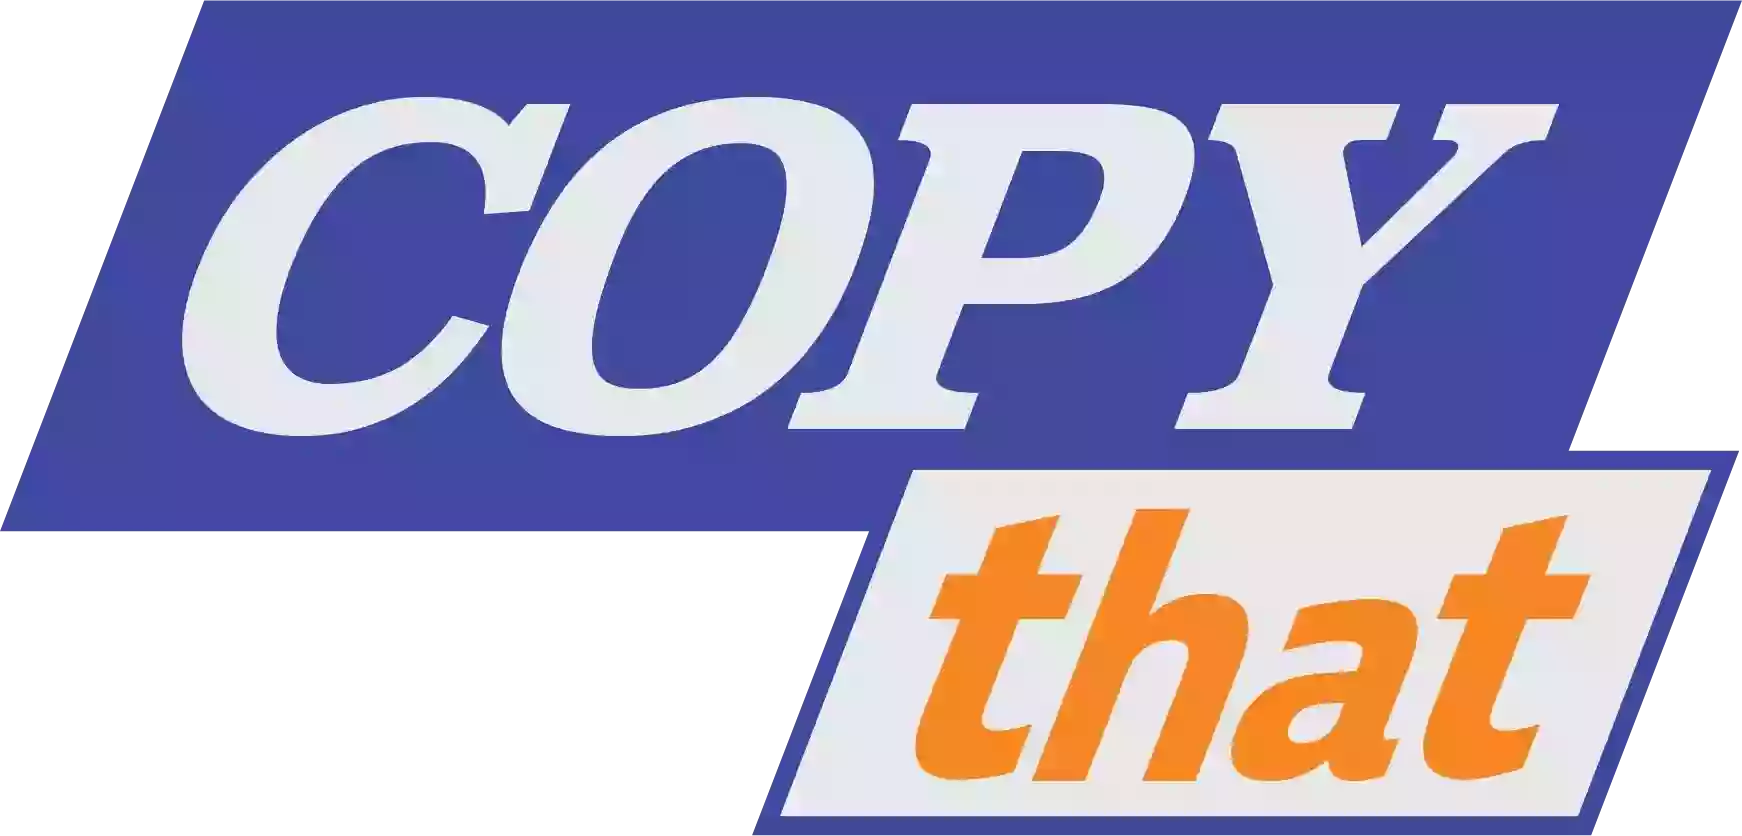 Copy That